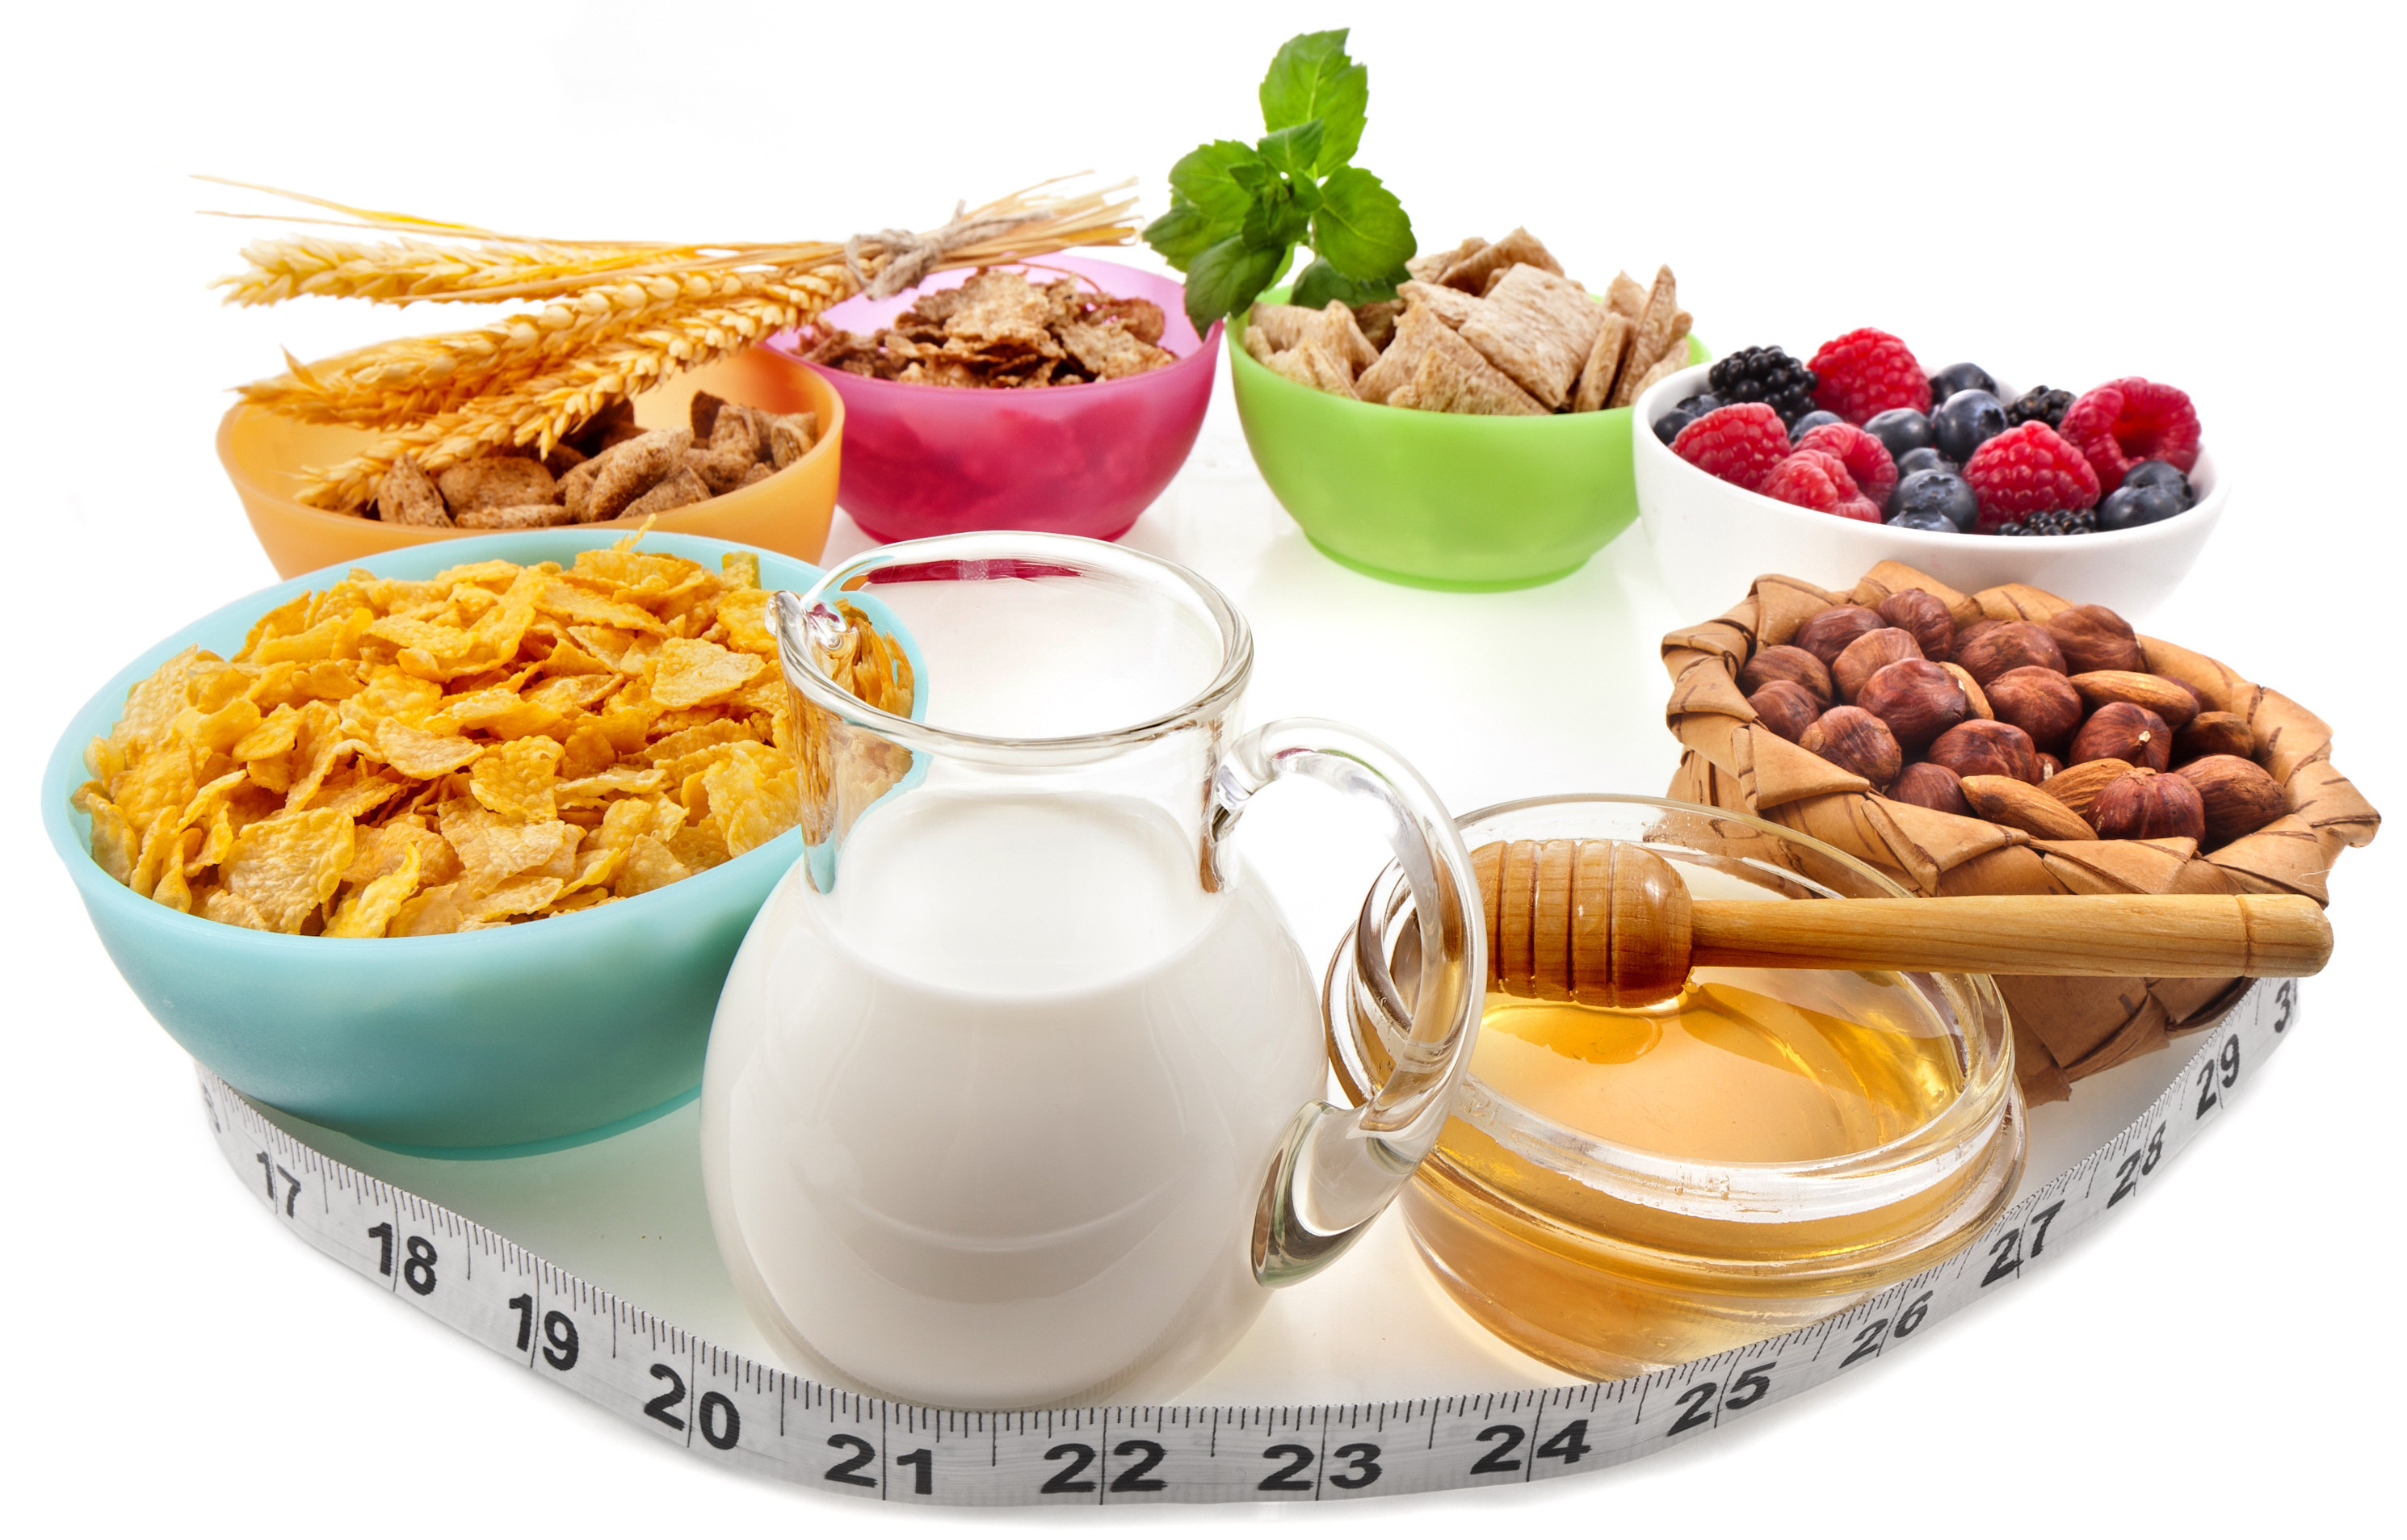 Attachment bigstock-Diet-weight-loss-breakfast-con-52313593-e1400493049563 (1).jpg